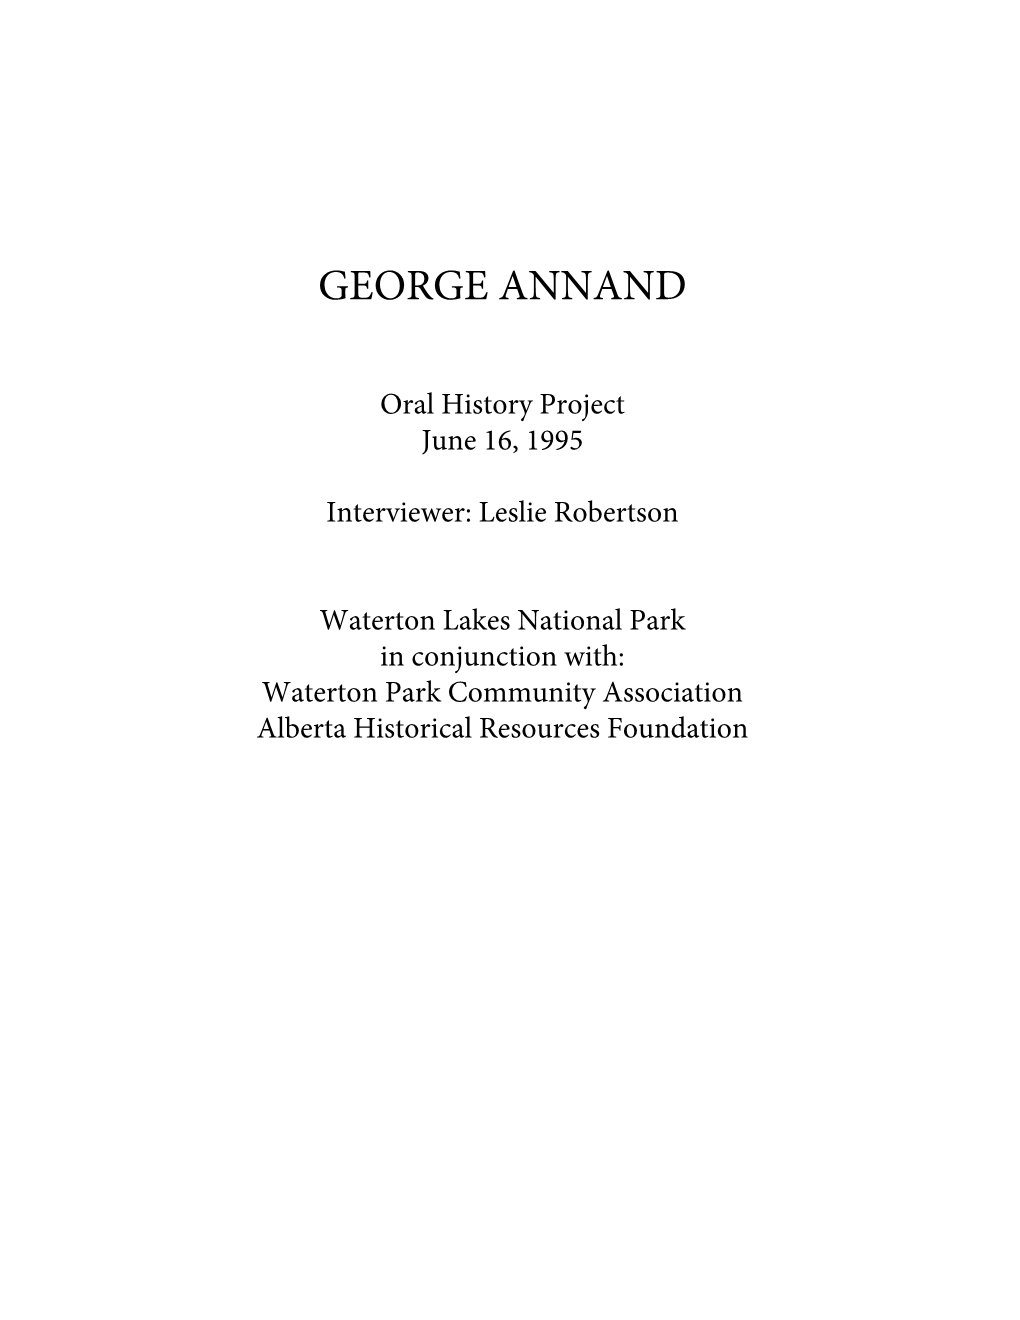 George Annand